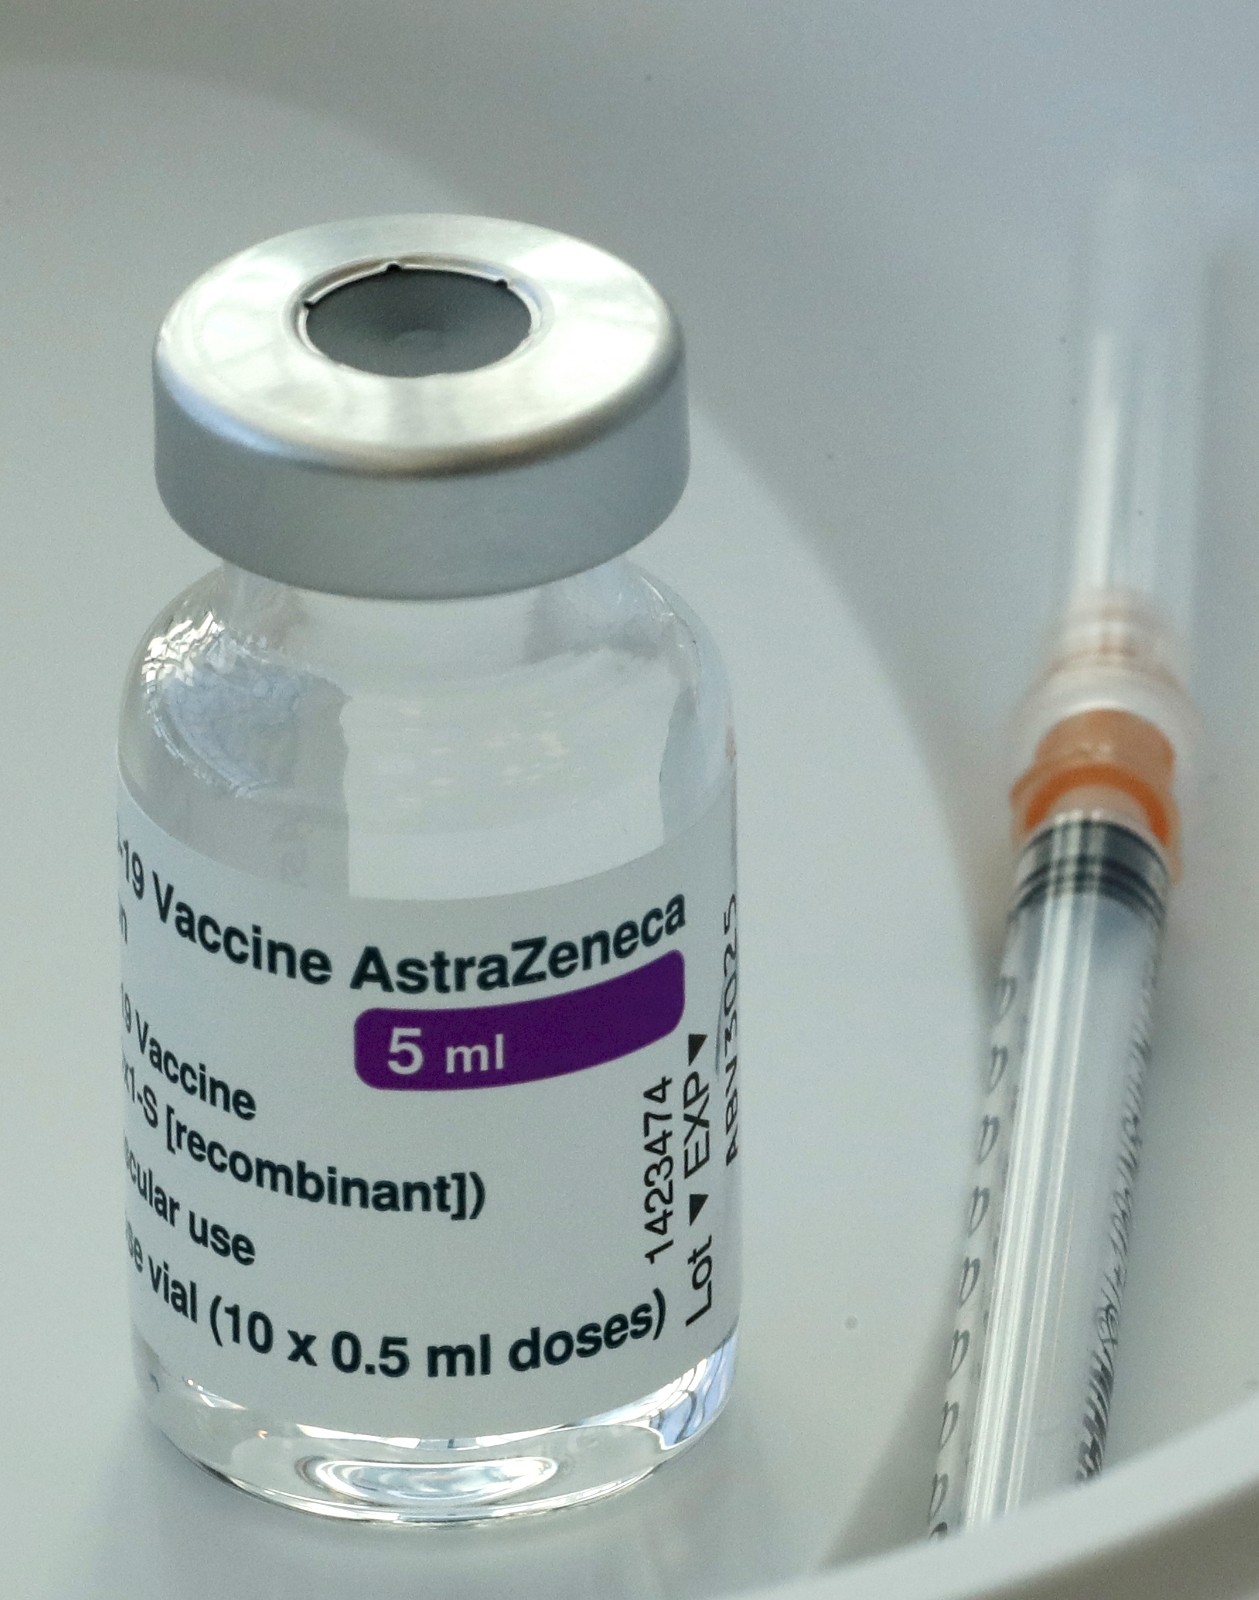 Berlin 60 yaş altı kişiler için AstraZeneca aşısının kullanımını durdurdu
